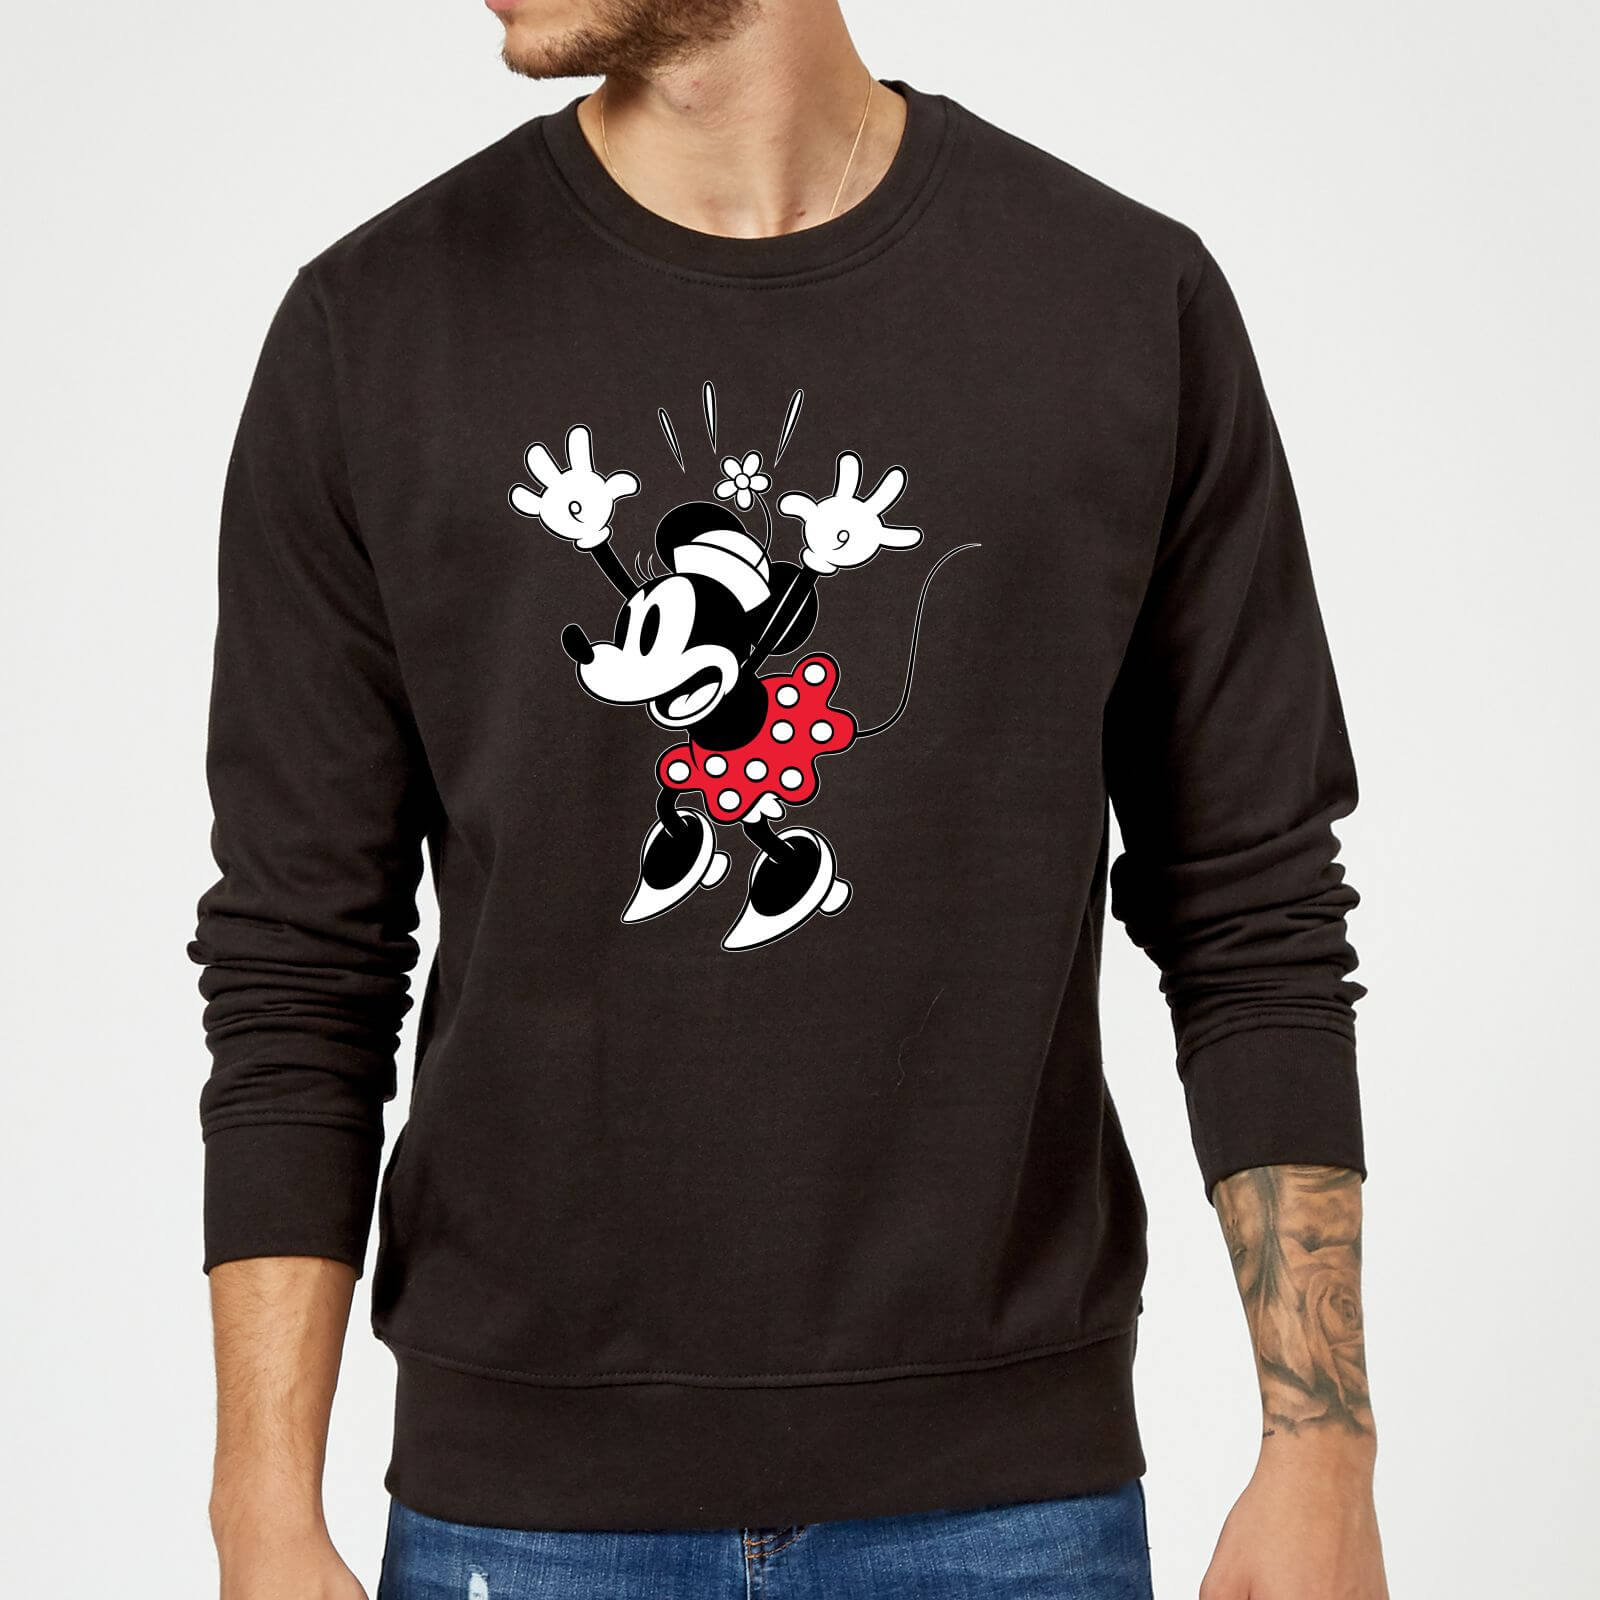 Disney Minnie Mouse Surprise Sweatshirt - Black - S